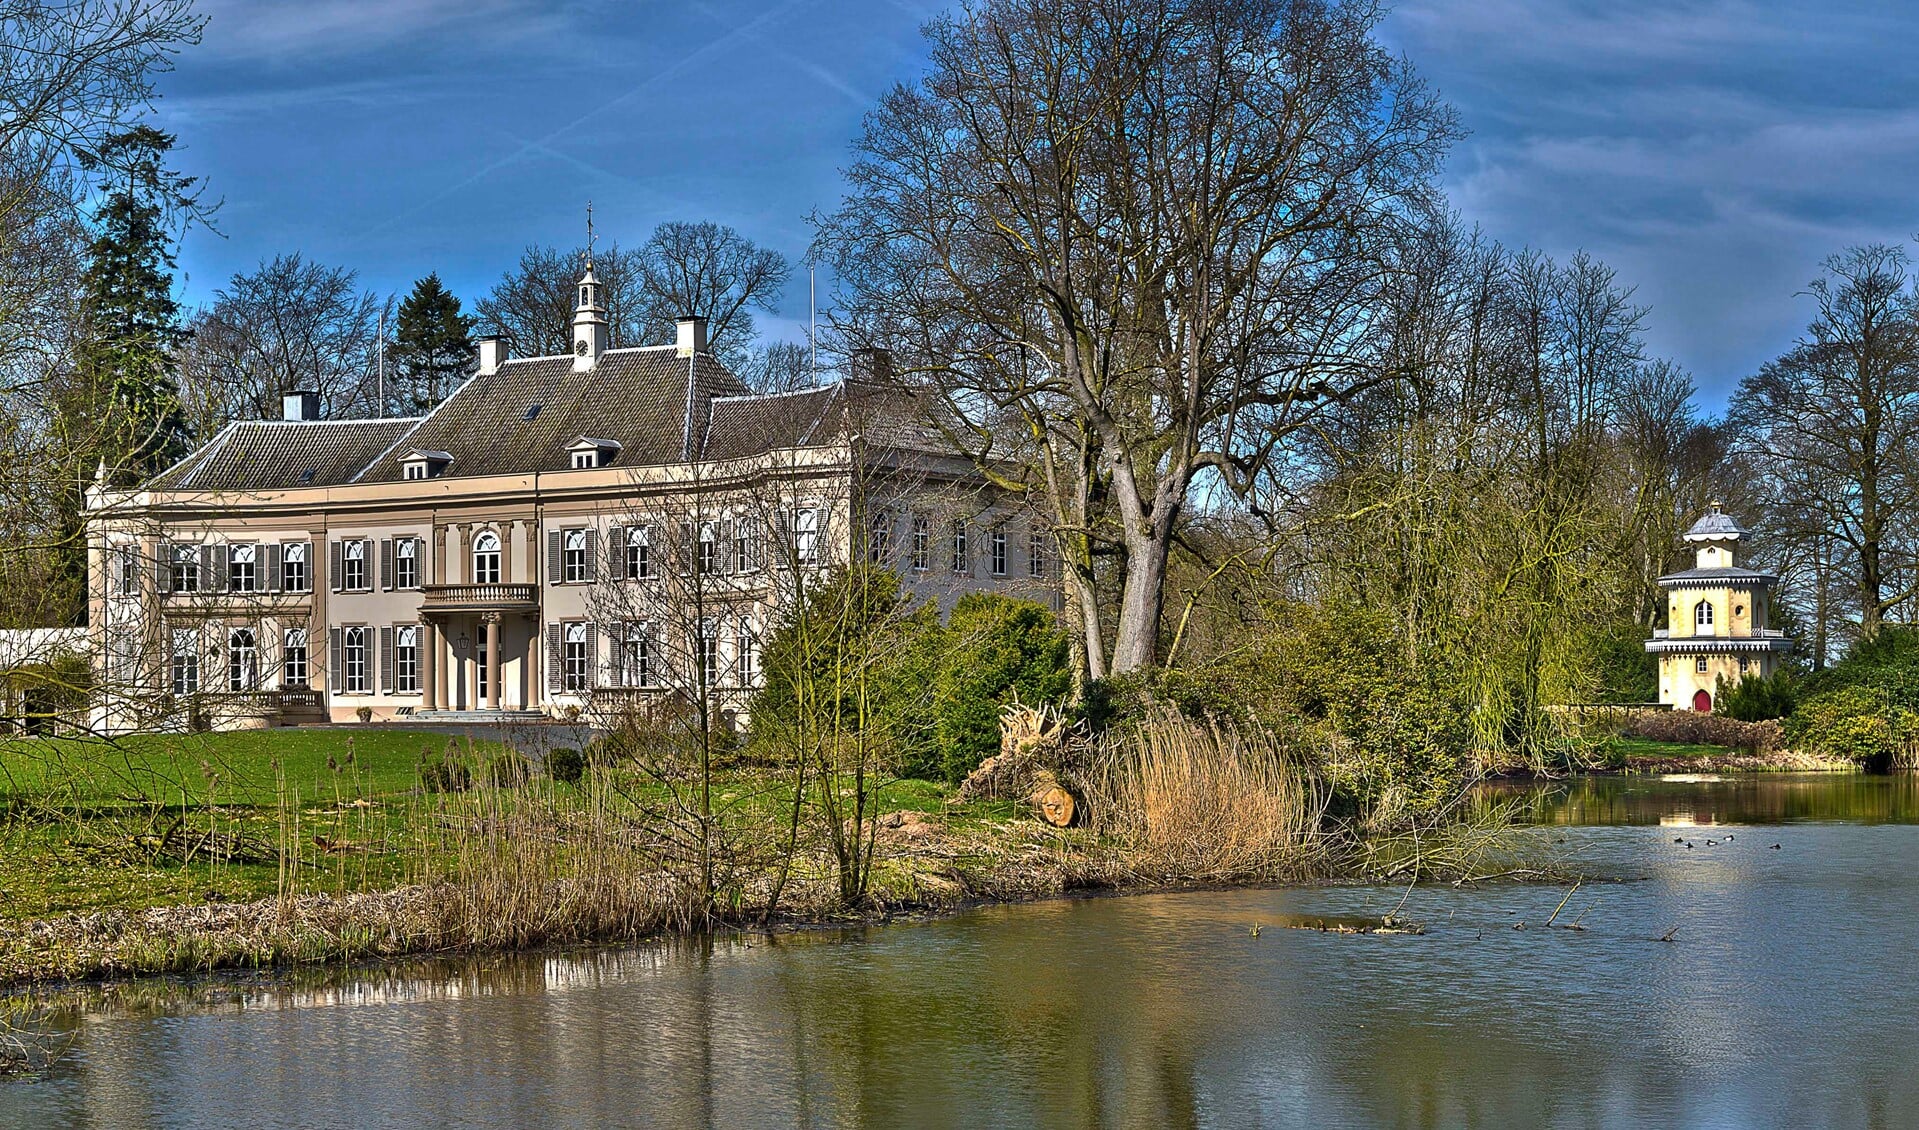 De historische buitenplaats Huis Landfort in Megchelen moet in oude luister worden hersteld. Foto: Henk van Raaij